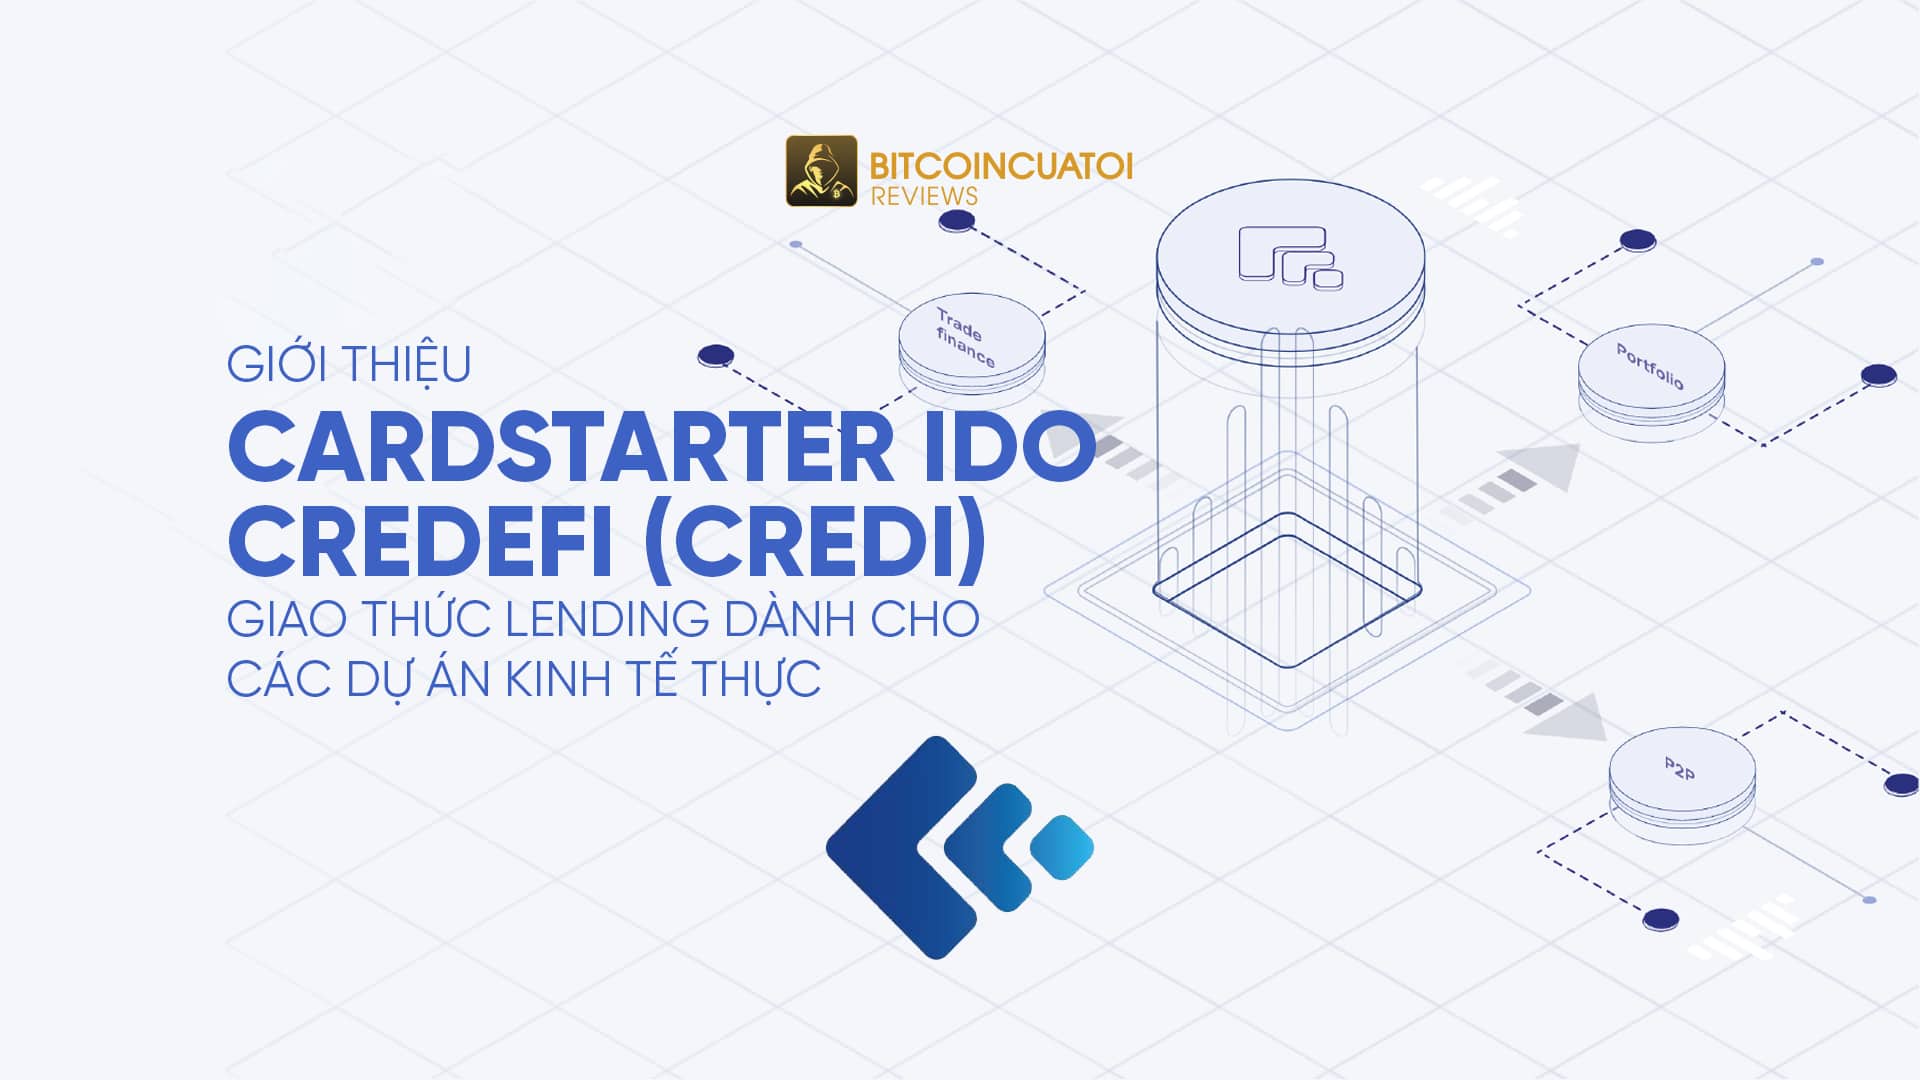 Giới thiệu CardStarter IDO: Credefi (CREDI) - Giao thức Lending dành cho các dự án kinh tế thực